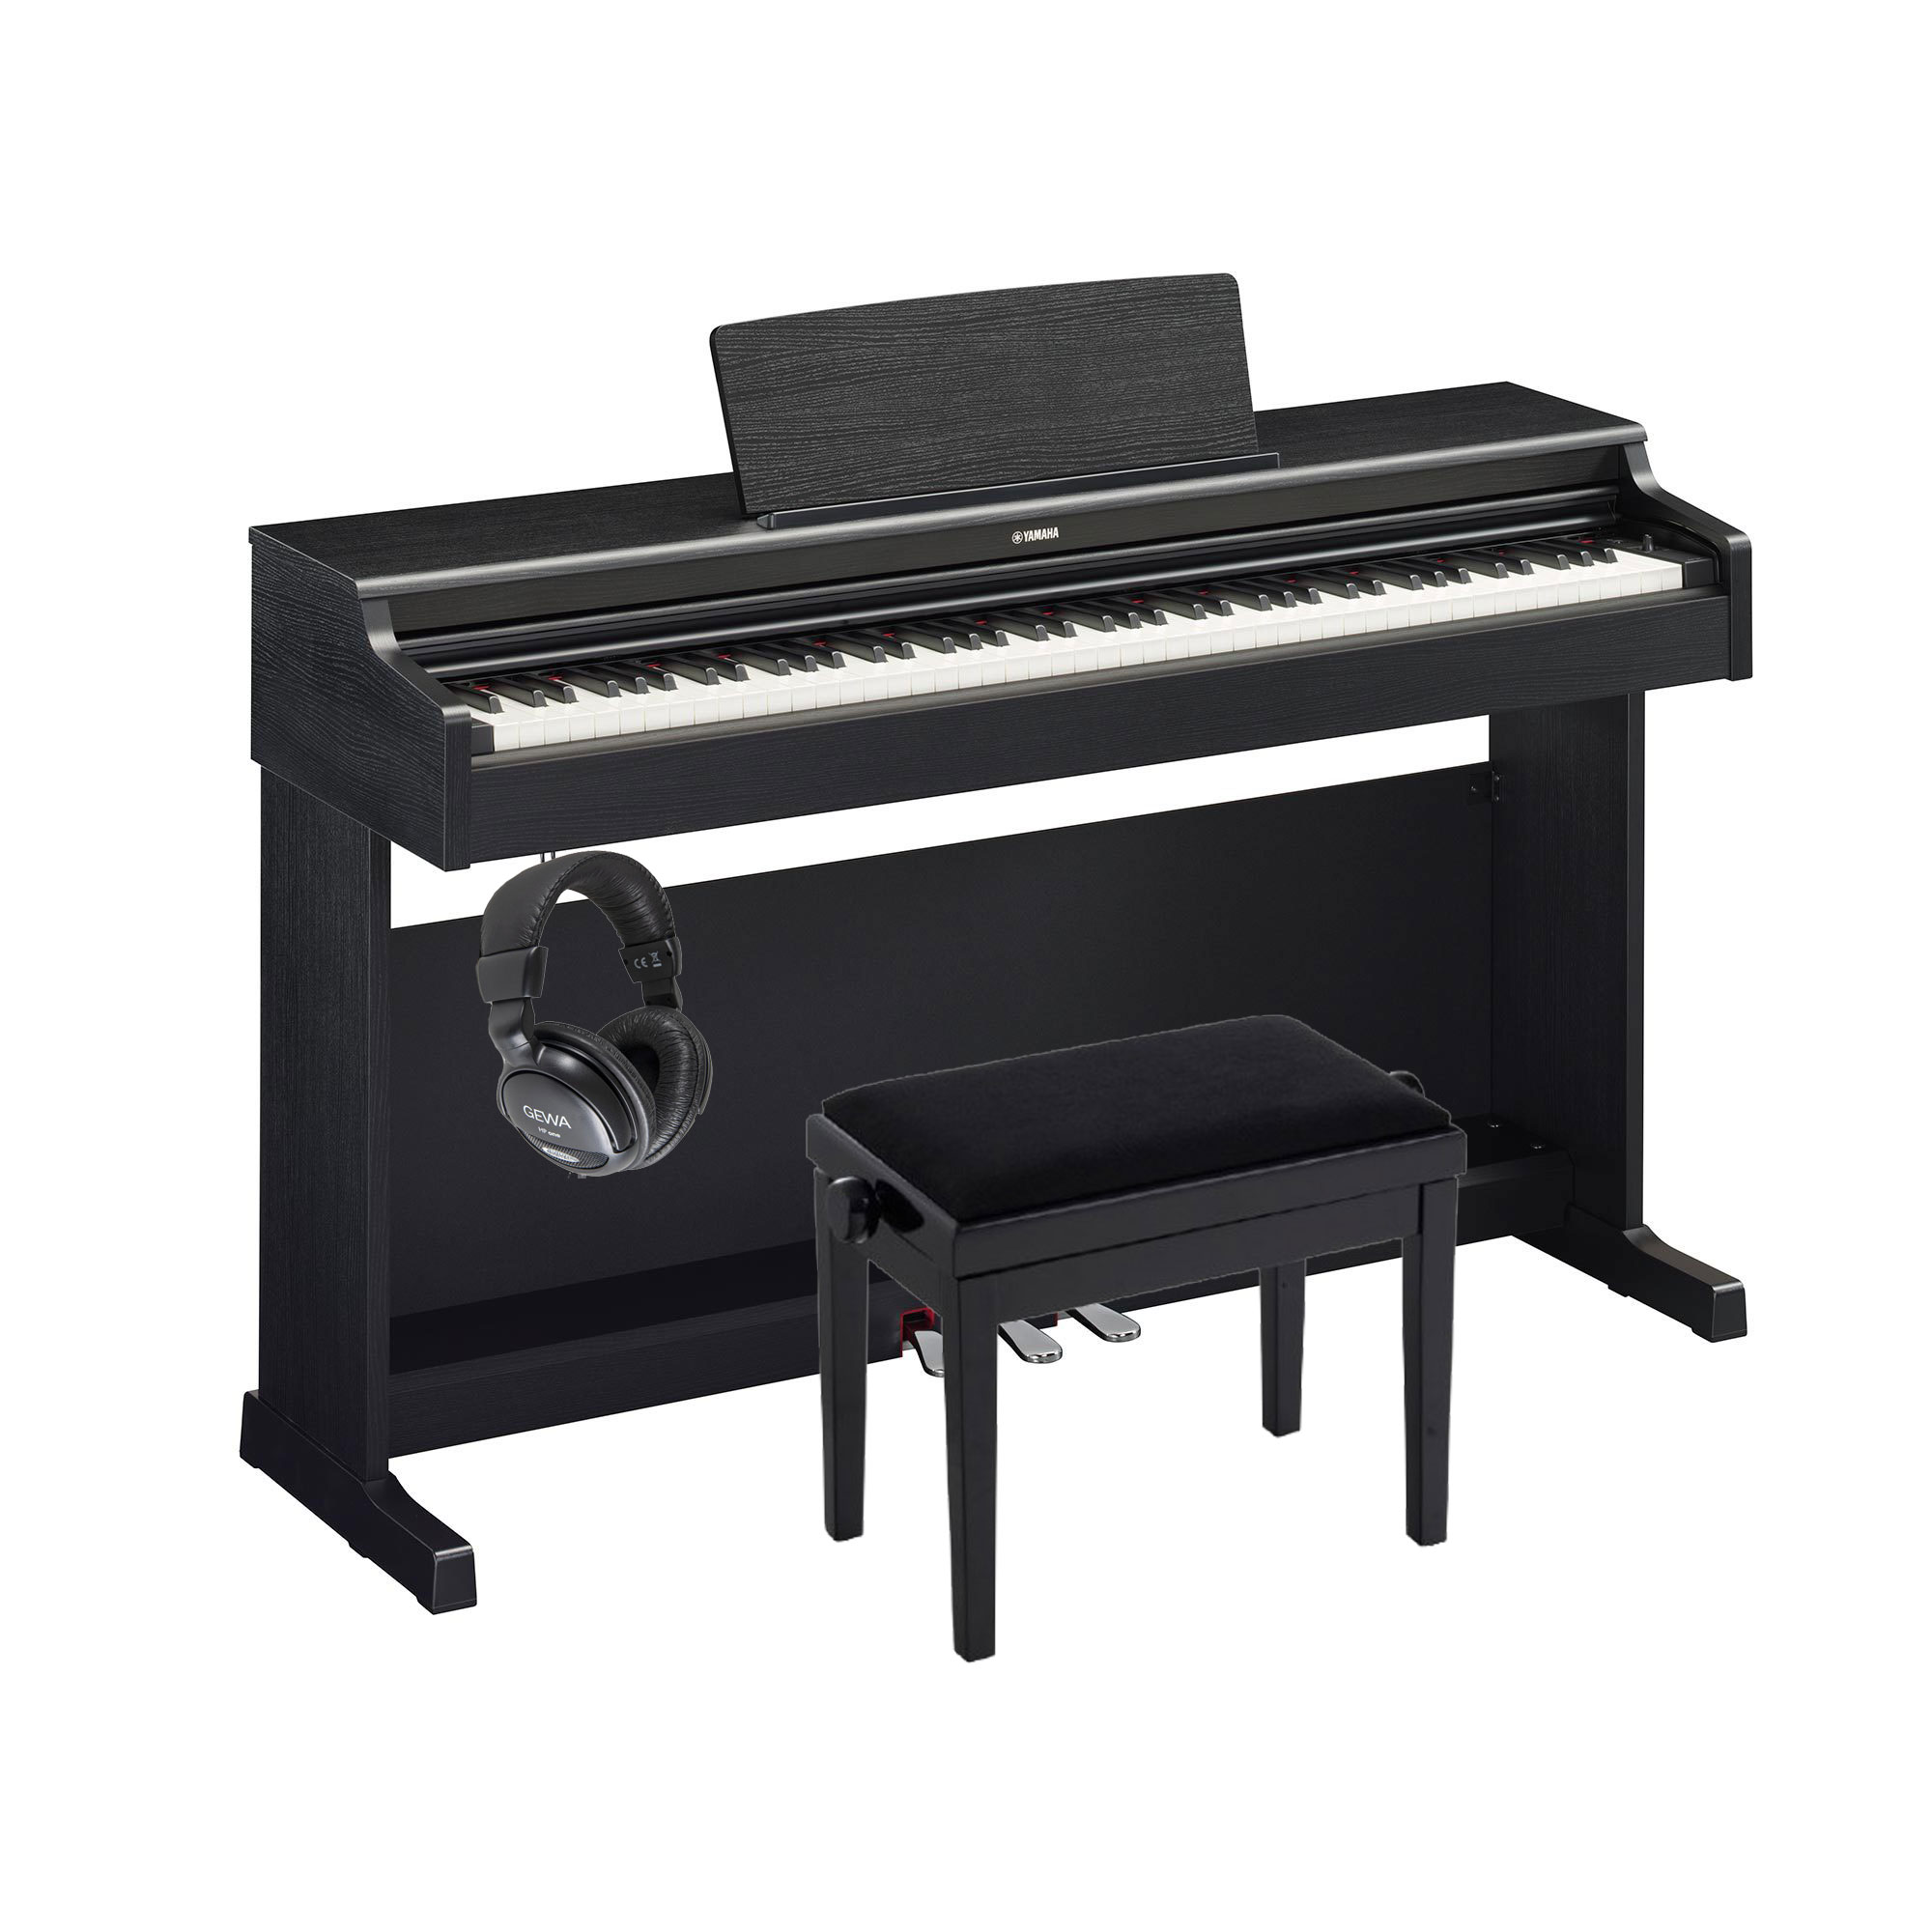 Pack piano Digital Yamaha Arius YDP-165 con banqueta y auriculares